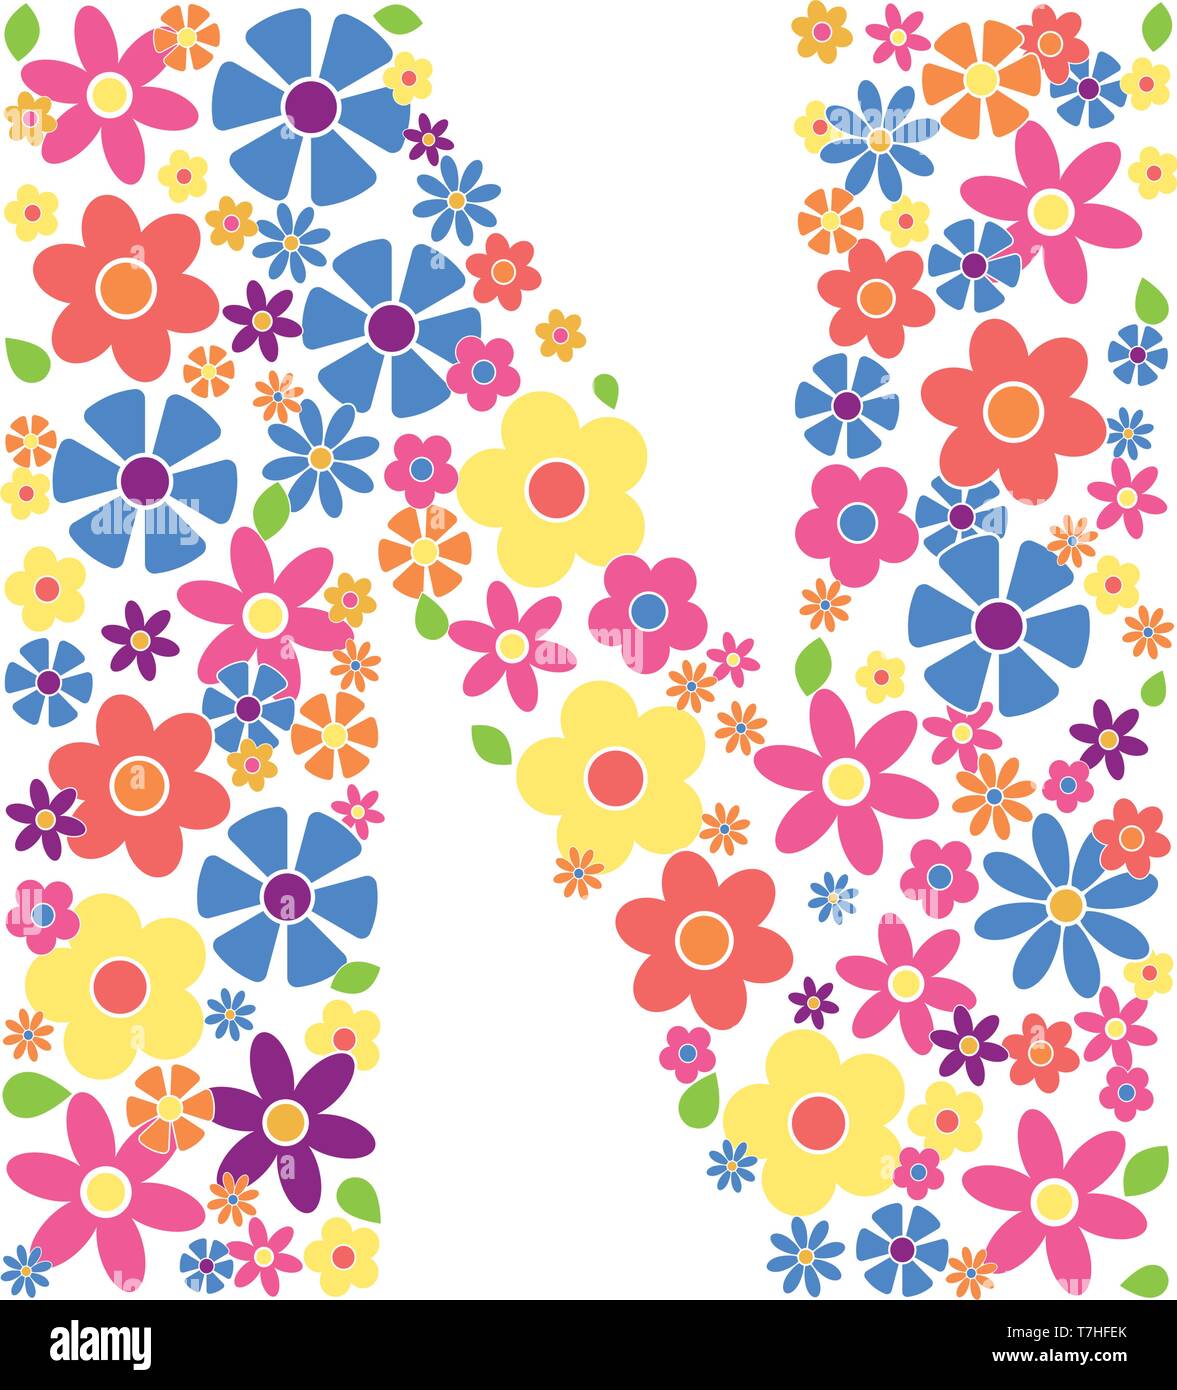 Buchstabe N gefüllt mit einer Vielzahl von bunten Blumen auf weißem Hintergrund Vektor-illustration isoliert Stock Vektor